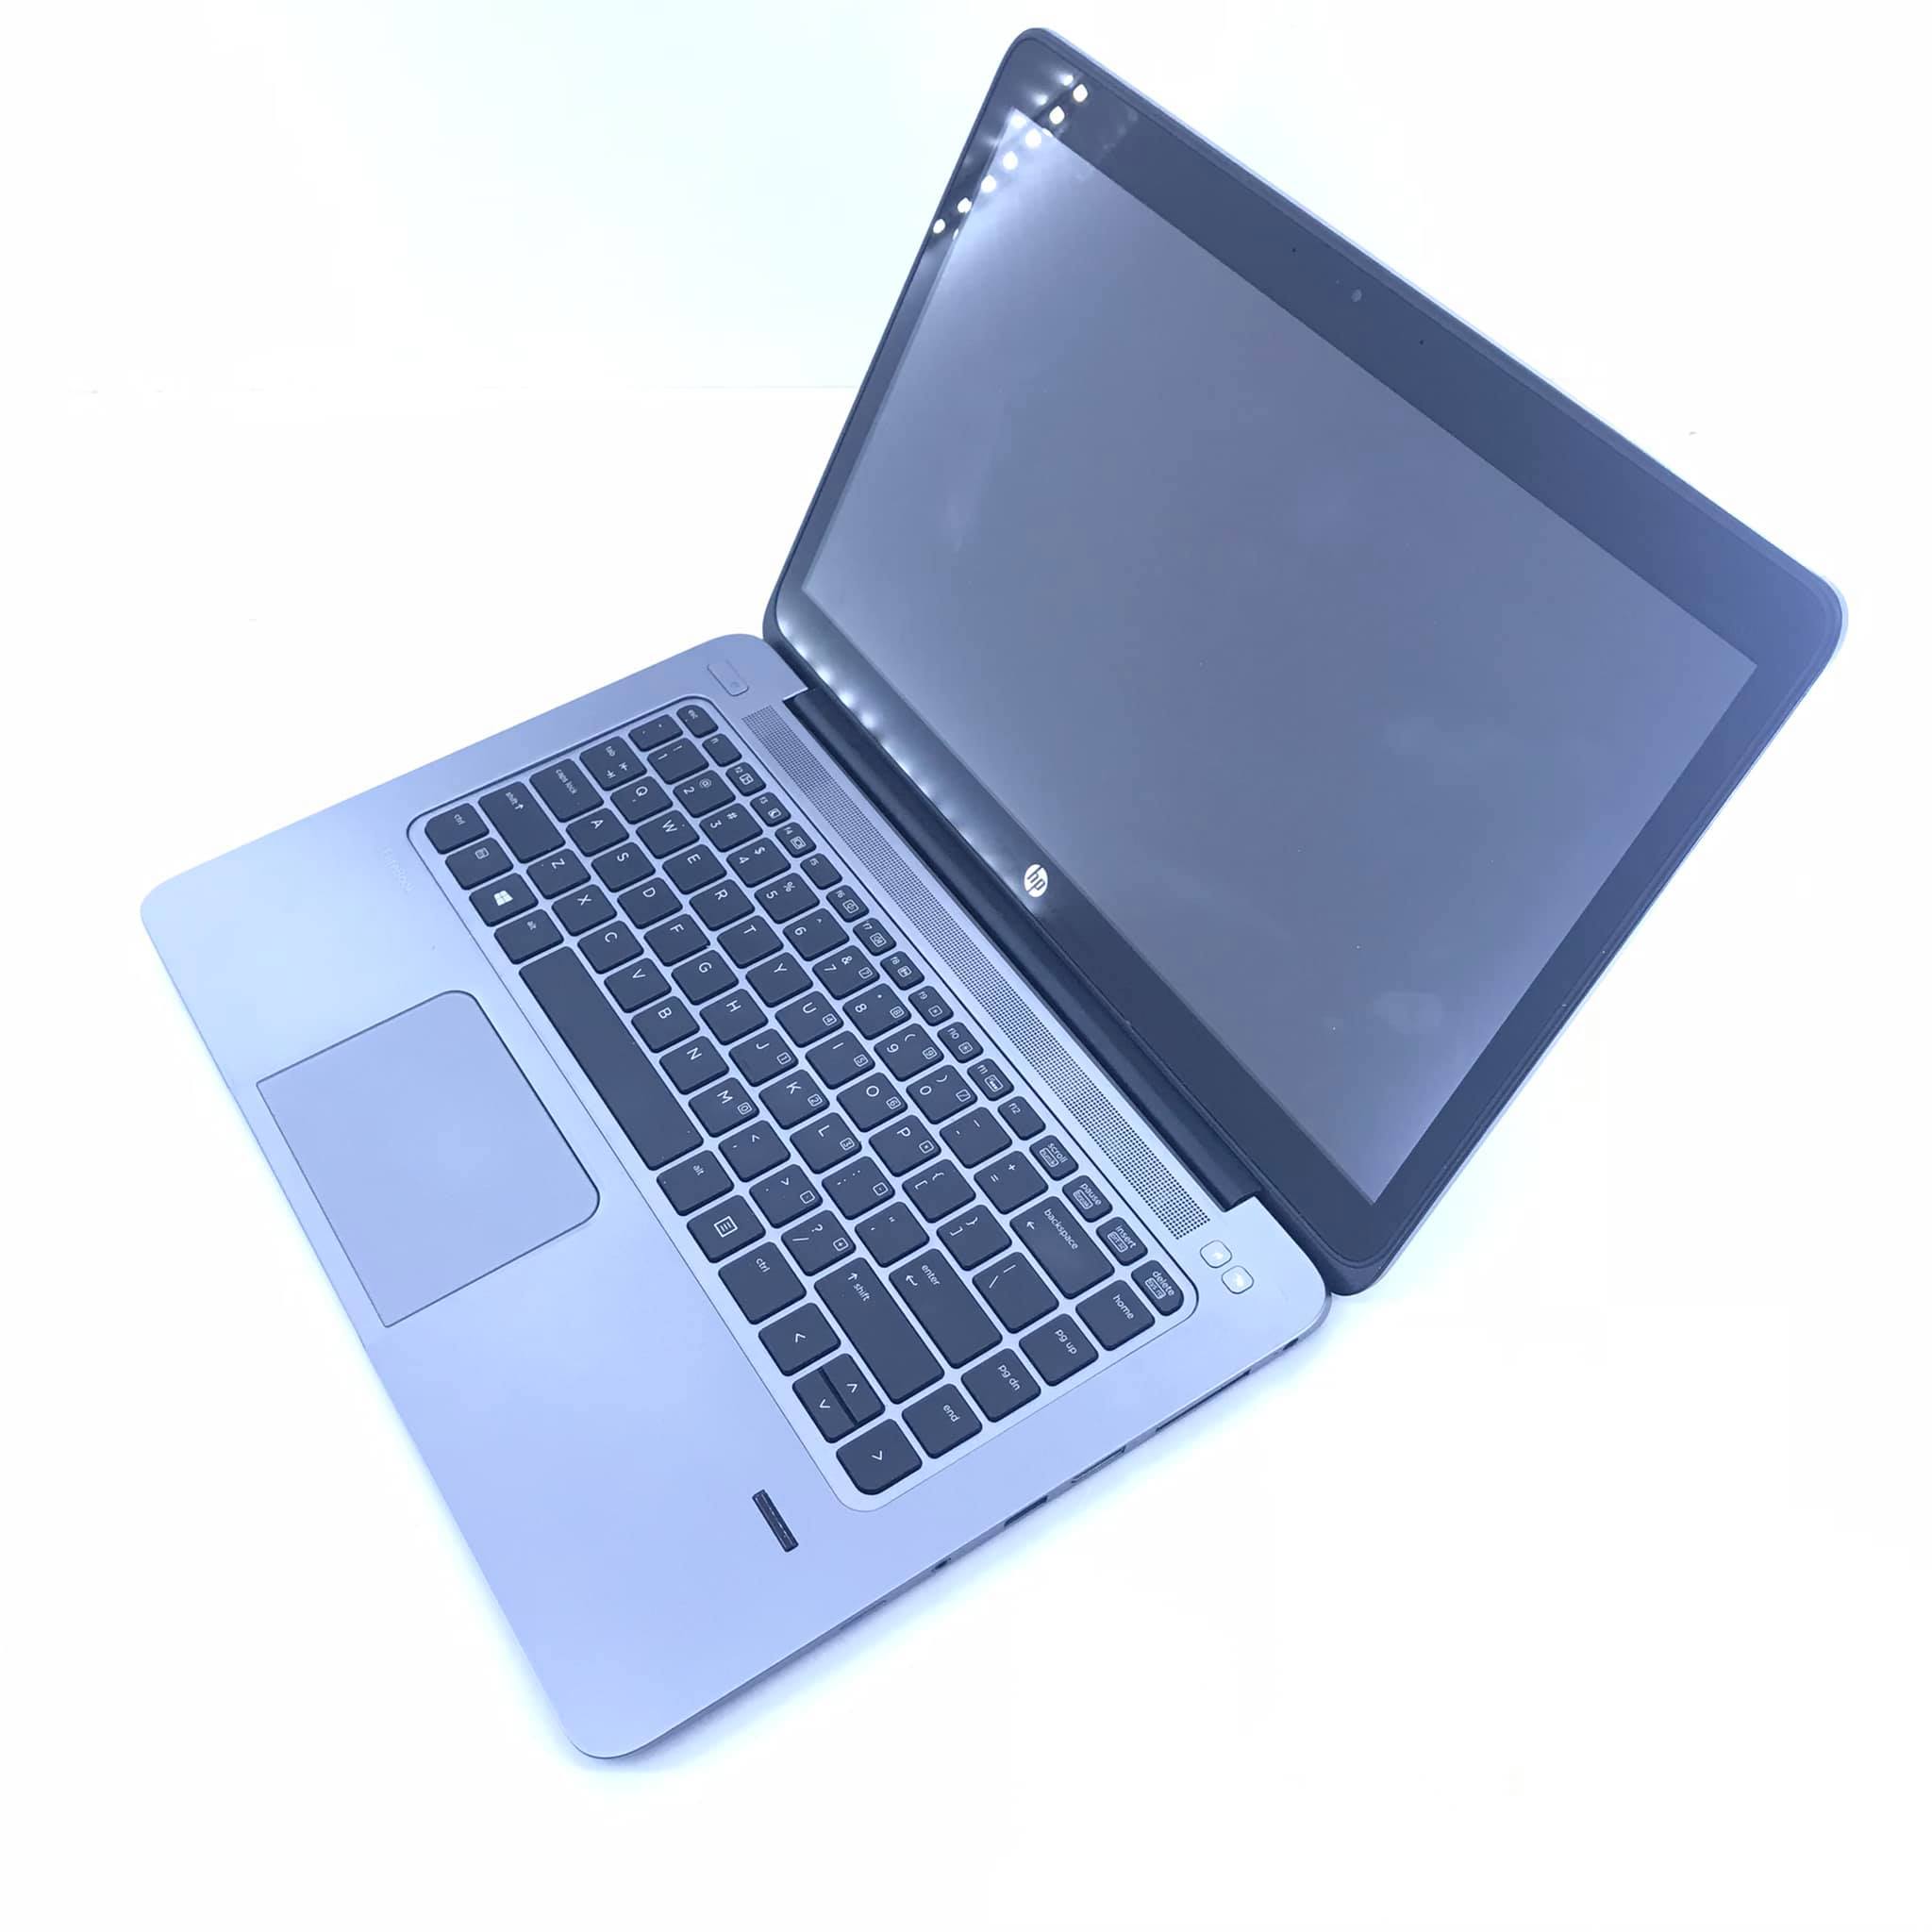 Laptop HG - Chuyên laptop xách tay giá rẻ ảnh 1